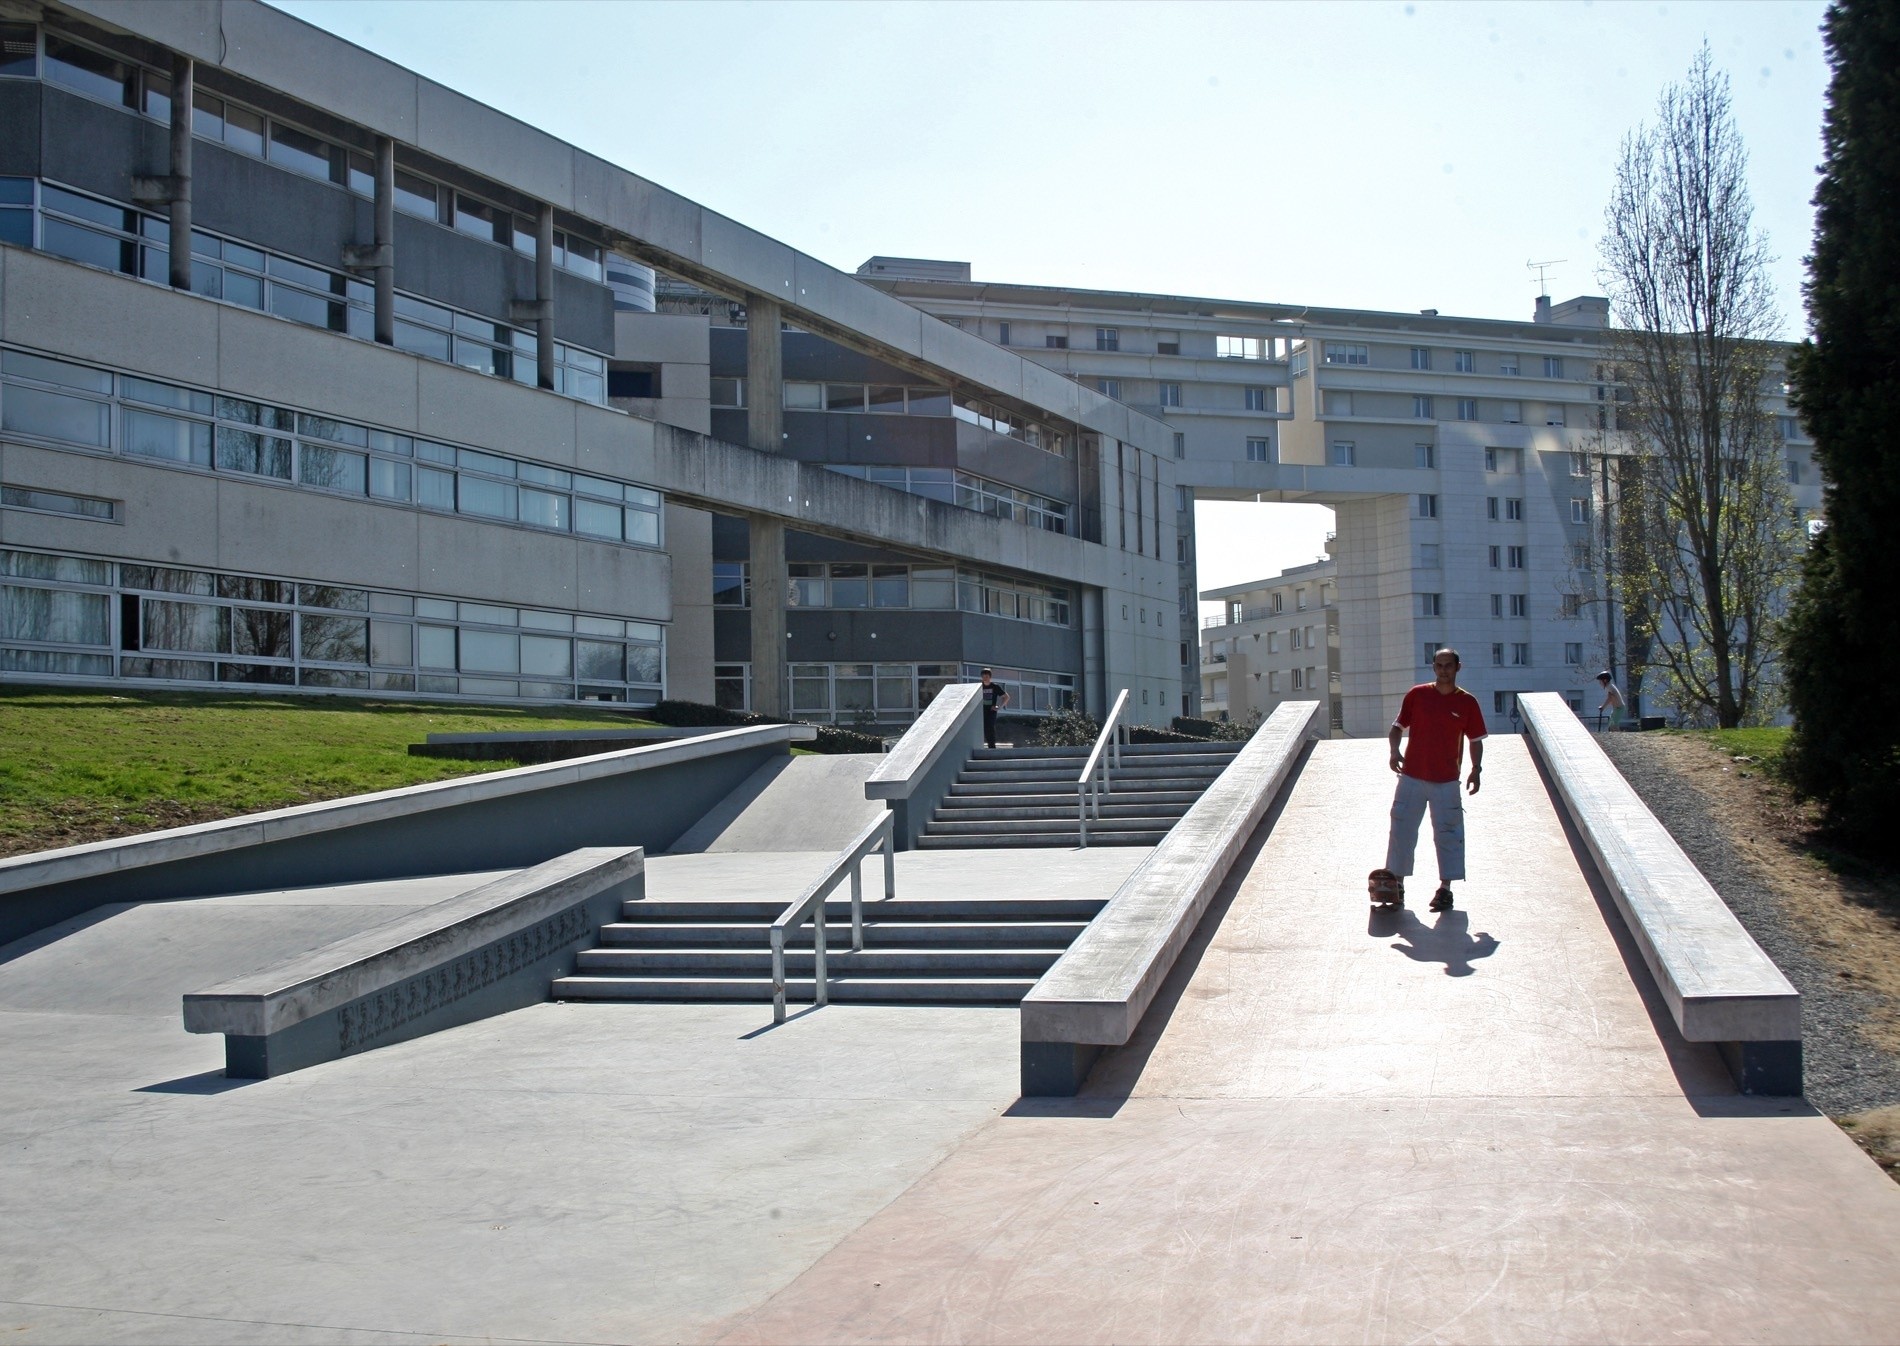 Rennes Arsenal skatepark